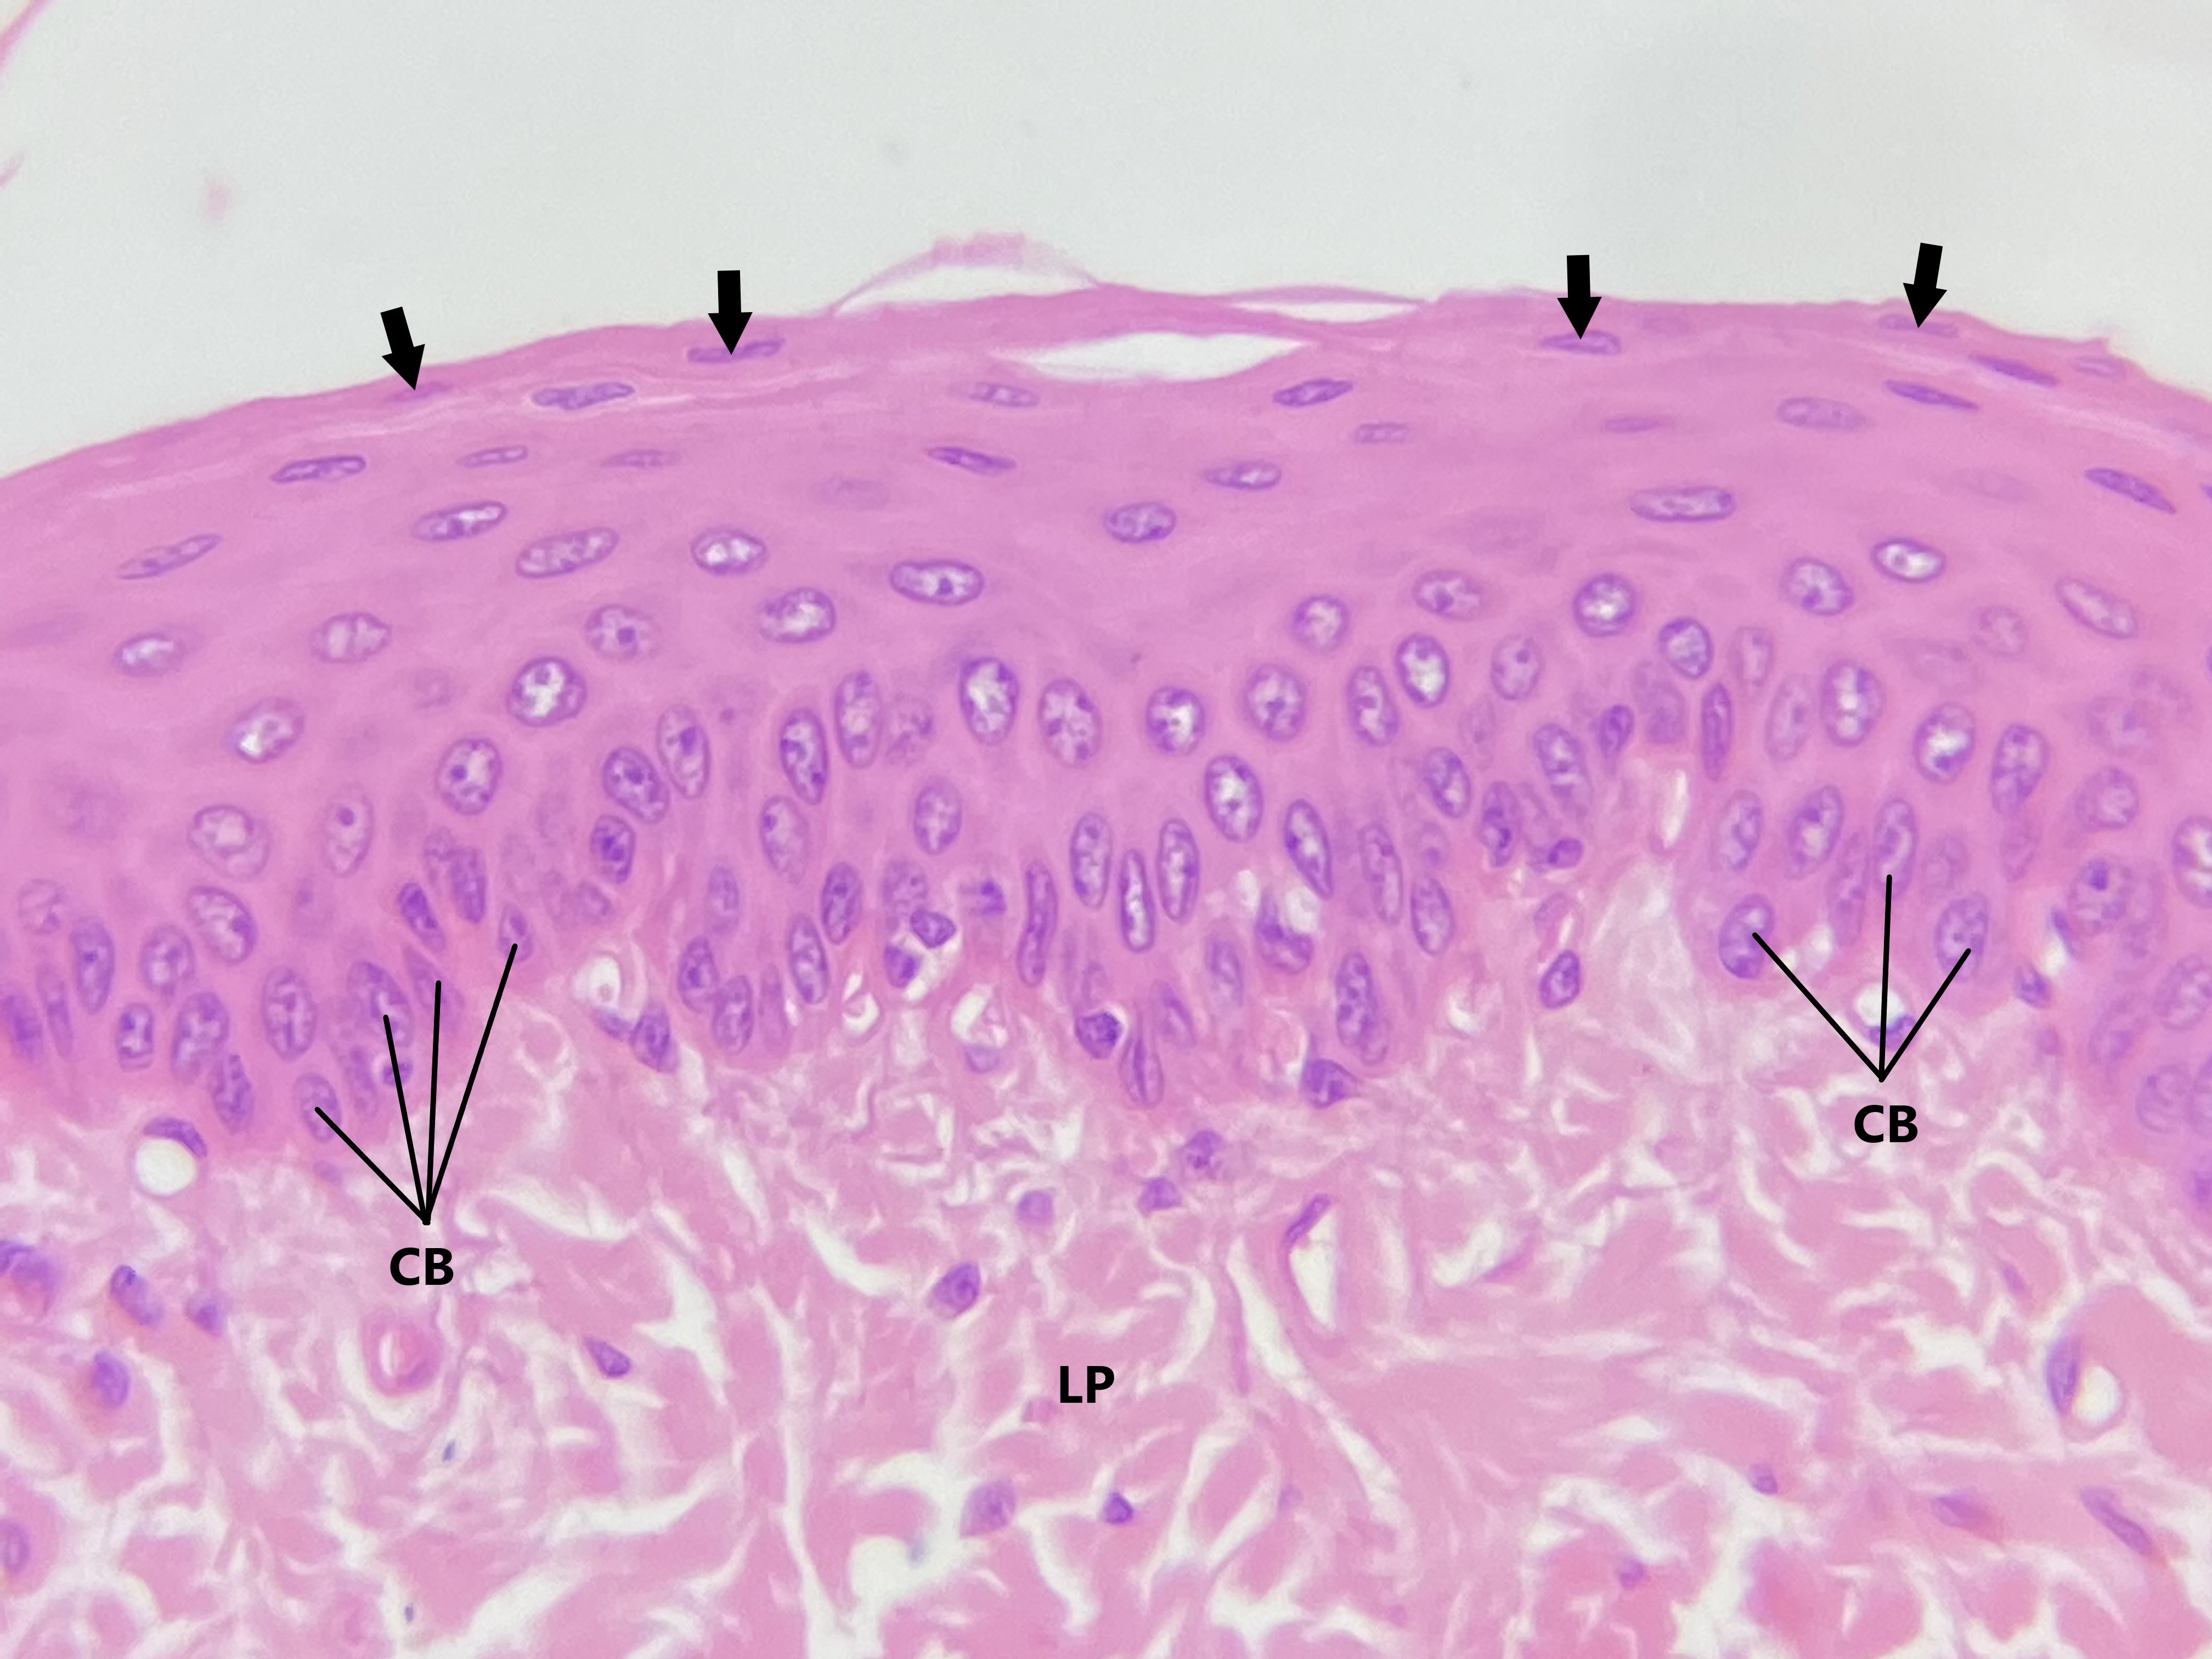 Lâmina: Esôfago (H&E - Aumento: 400x).  Epitélio estratificado pavimentoso não queratinizado do esôfago. As células da camada basal variam de cúbicas à colunares, o que pode ser constatado pelo formato de seus núcleos. Apenas as células da camada basal estão apoiadas sobre a membrana basal.  As células basais (CB) são menores e apresentam pouco citoplasma, o que explica maior proximidade dos núcleos entre si nessa região. O formato das células se altera à medida que essas células se movem para a superfície, até atingirem seu estado máximo de diferenciação, aonde passam a ser pavimentosas (setas). Consequentemente, há alteração também no formato dos núcleos nos diferentes níveis.